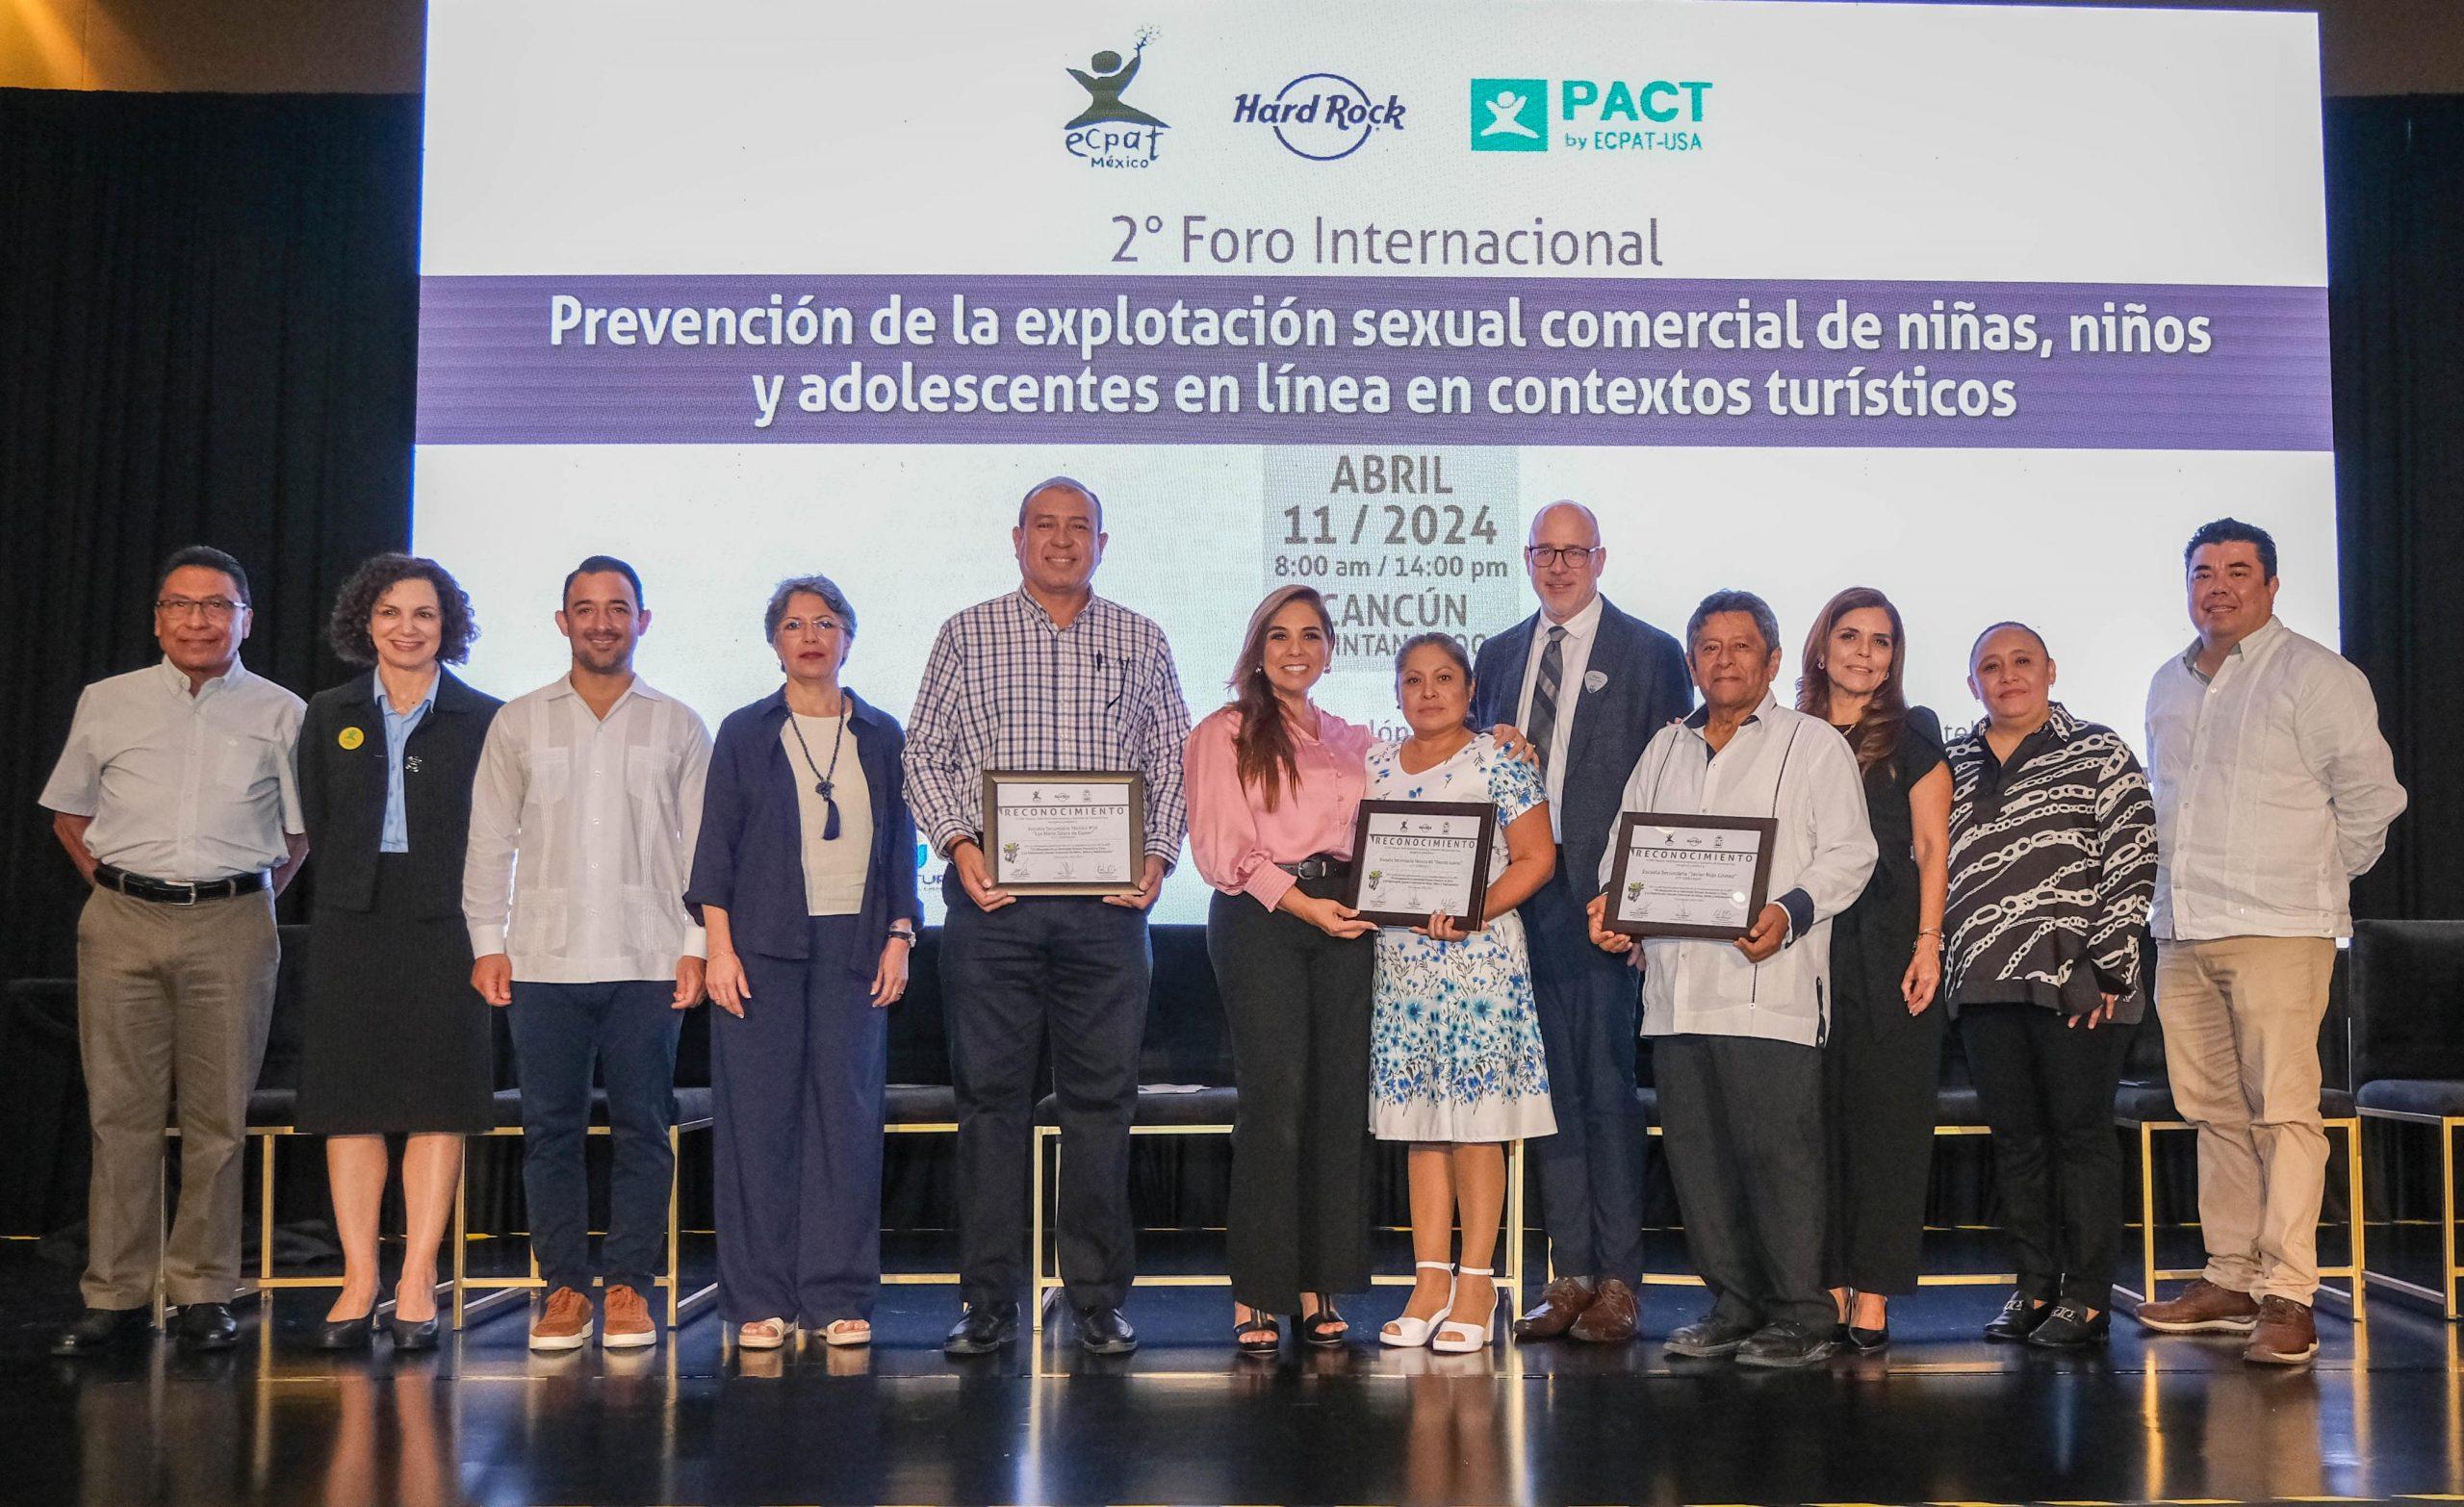 Quintana Roo avanza firme en la lucha contra la explotación sexual de niñas, niños y adolescentes. Durante el 2º Foro Internacional Prevención de la Explotación Sexual Comercial de Niñas, Niños y